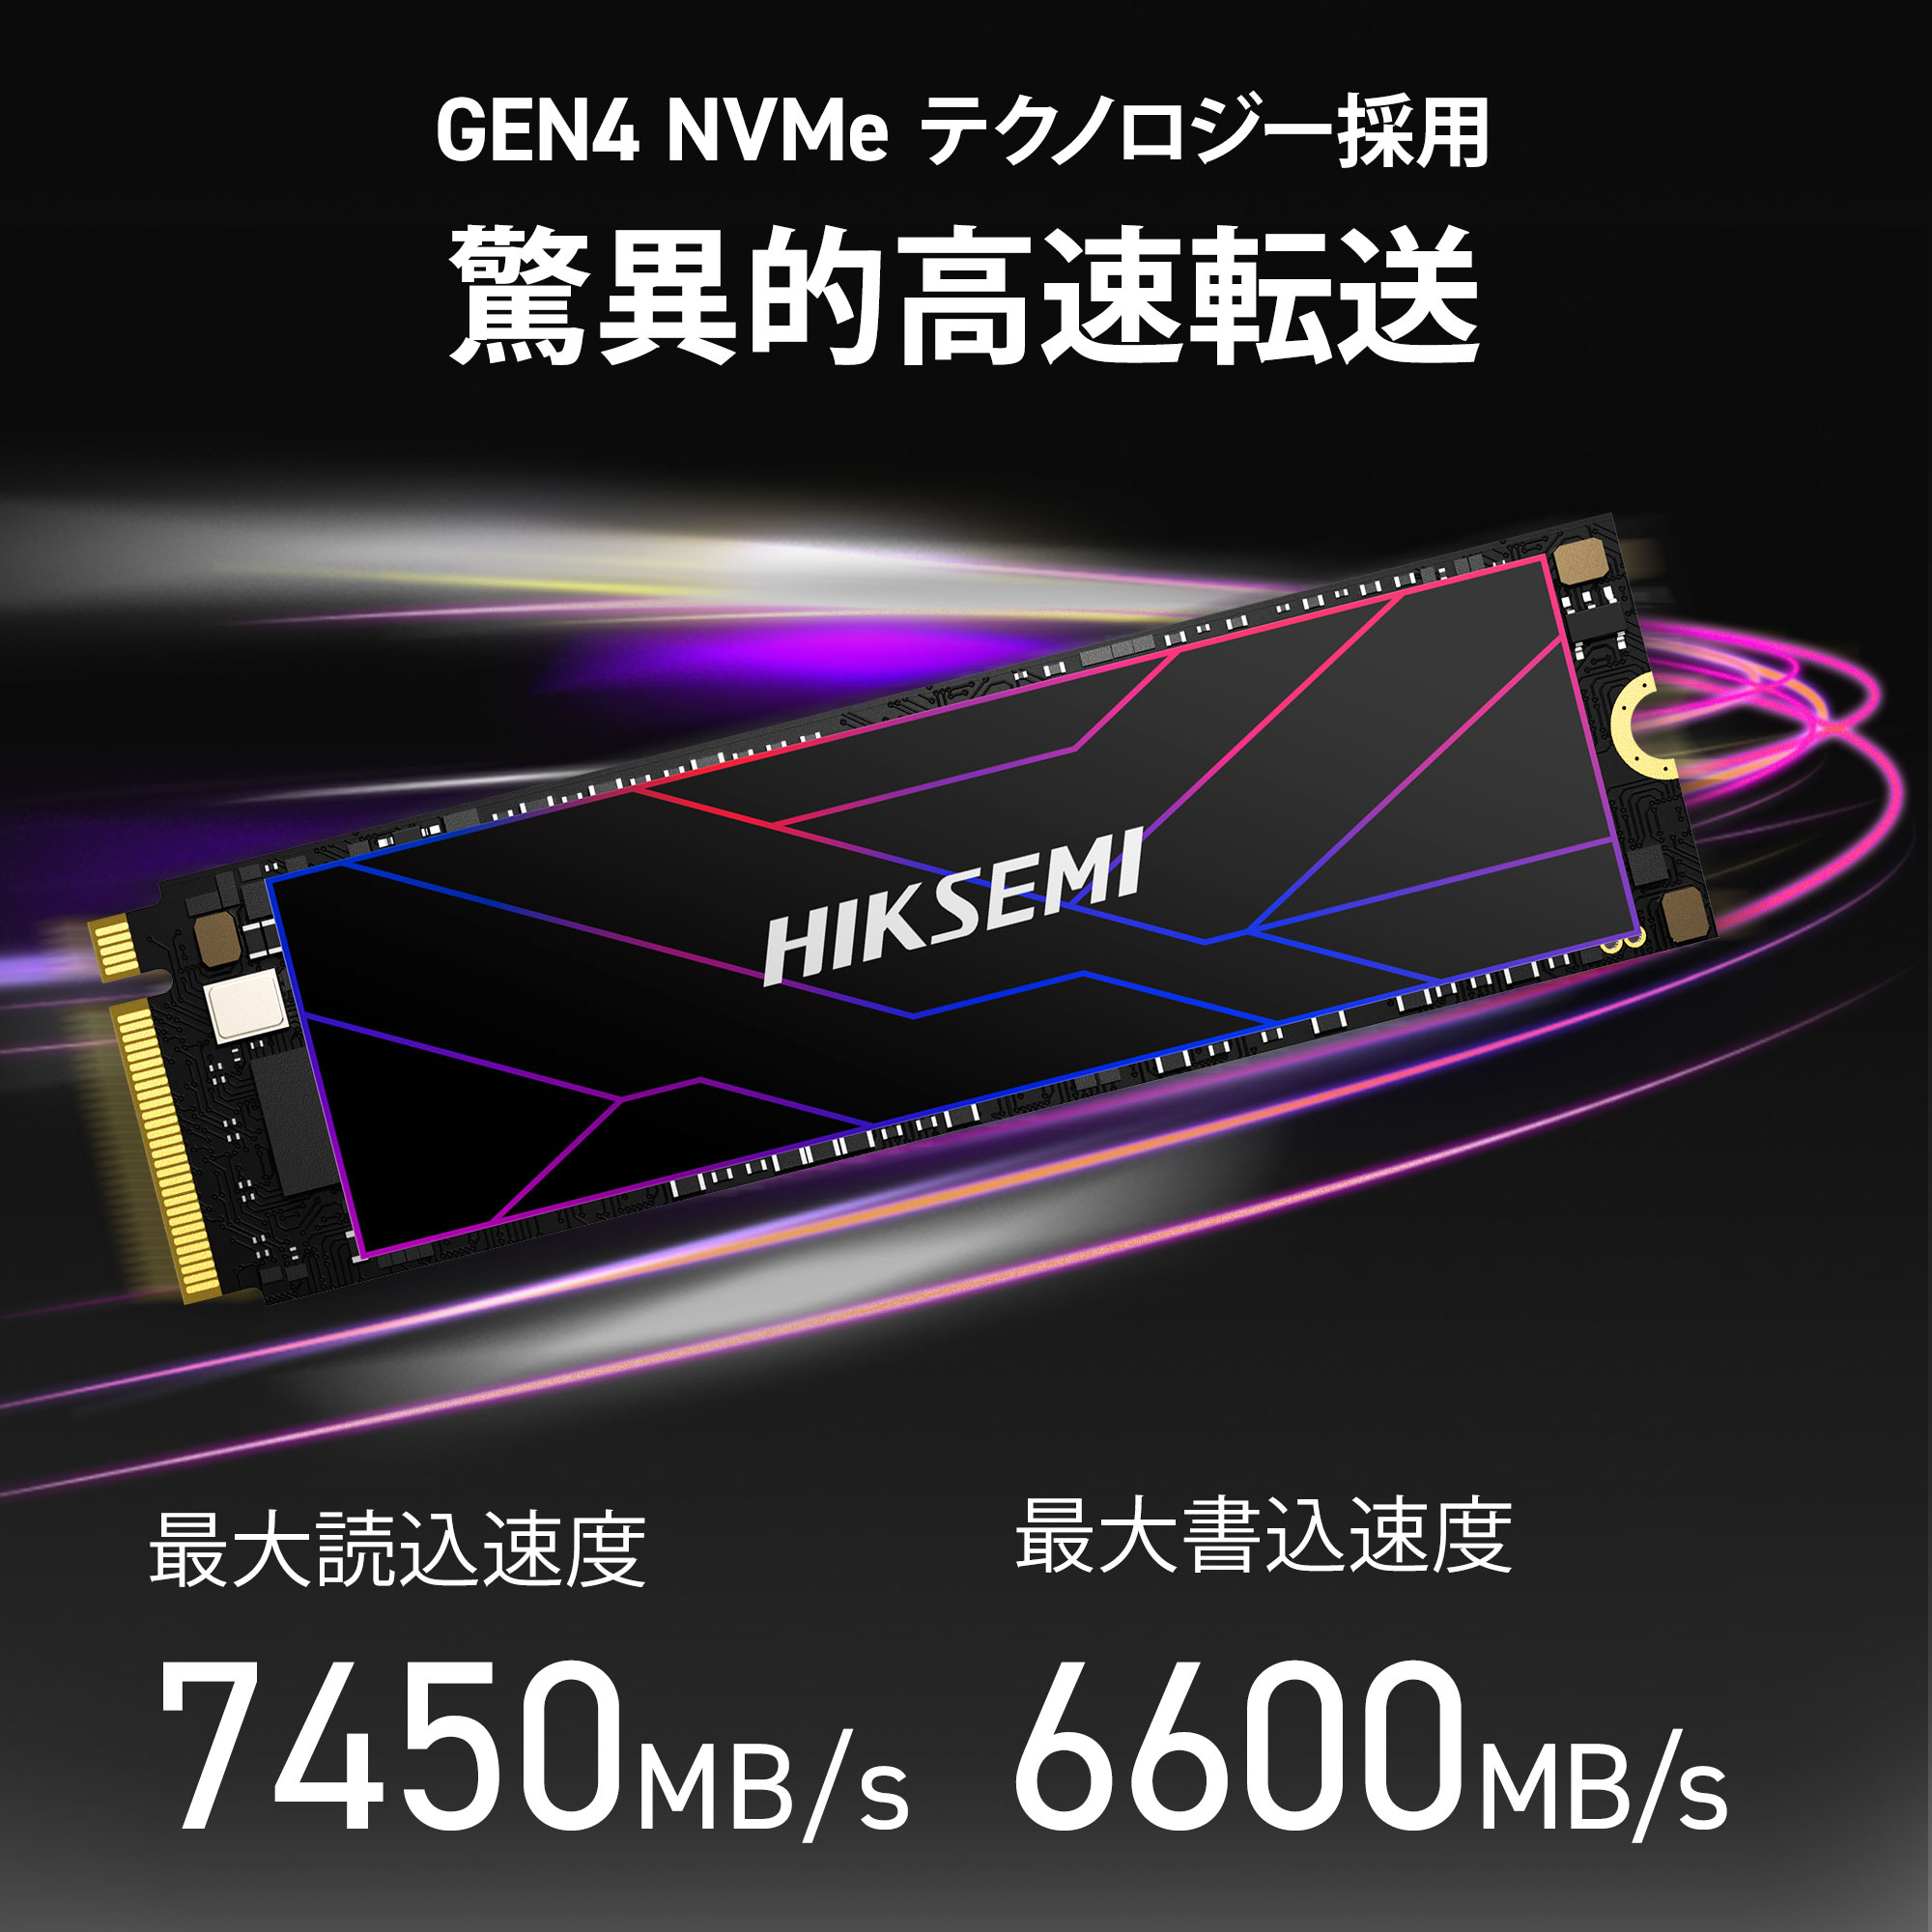 HIKSEMI 1TB NVMe SSD PCIe Gen 4×4 R:7,450MB/s W:6,600MB/s PS5確認